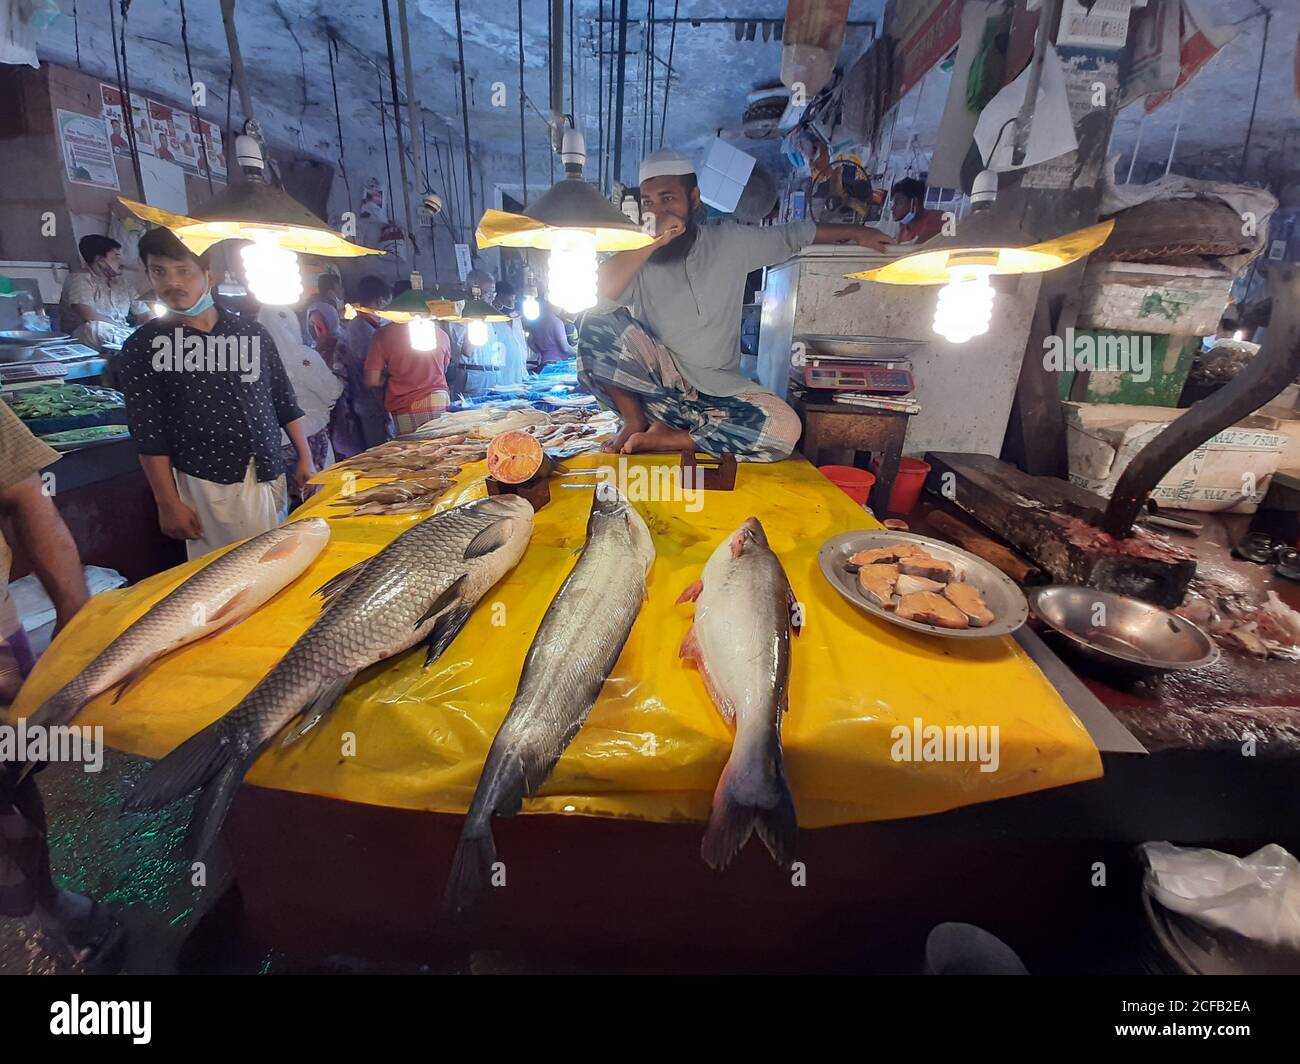 Le poisson est la principale source de protéines animales pour les populations bangladaises. Les vendeurs de poisson vendent des prises de poisson provenant d'eau douce et saumâtre. Banque D'Images